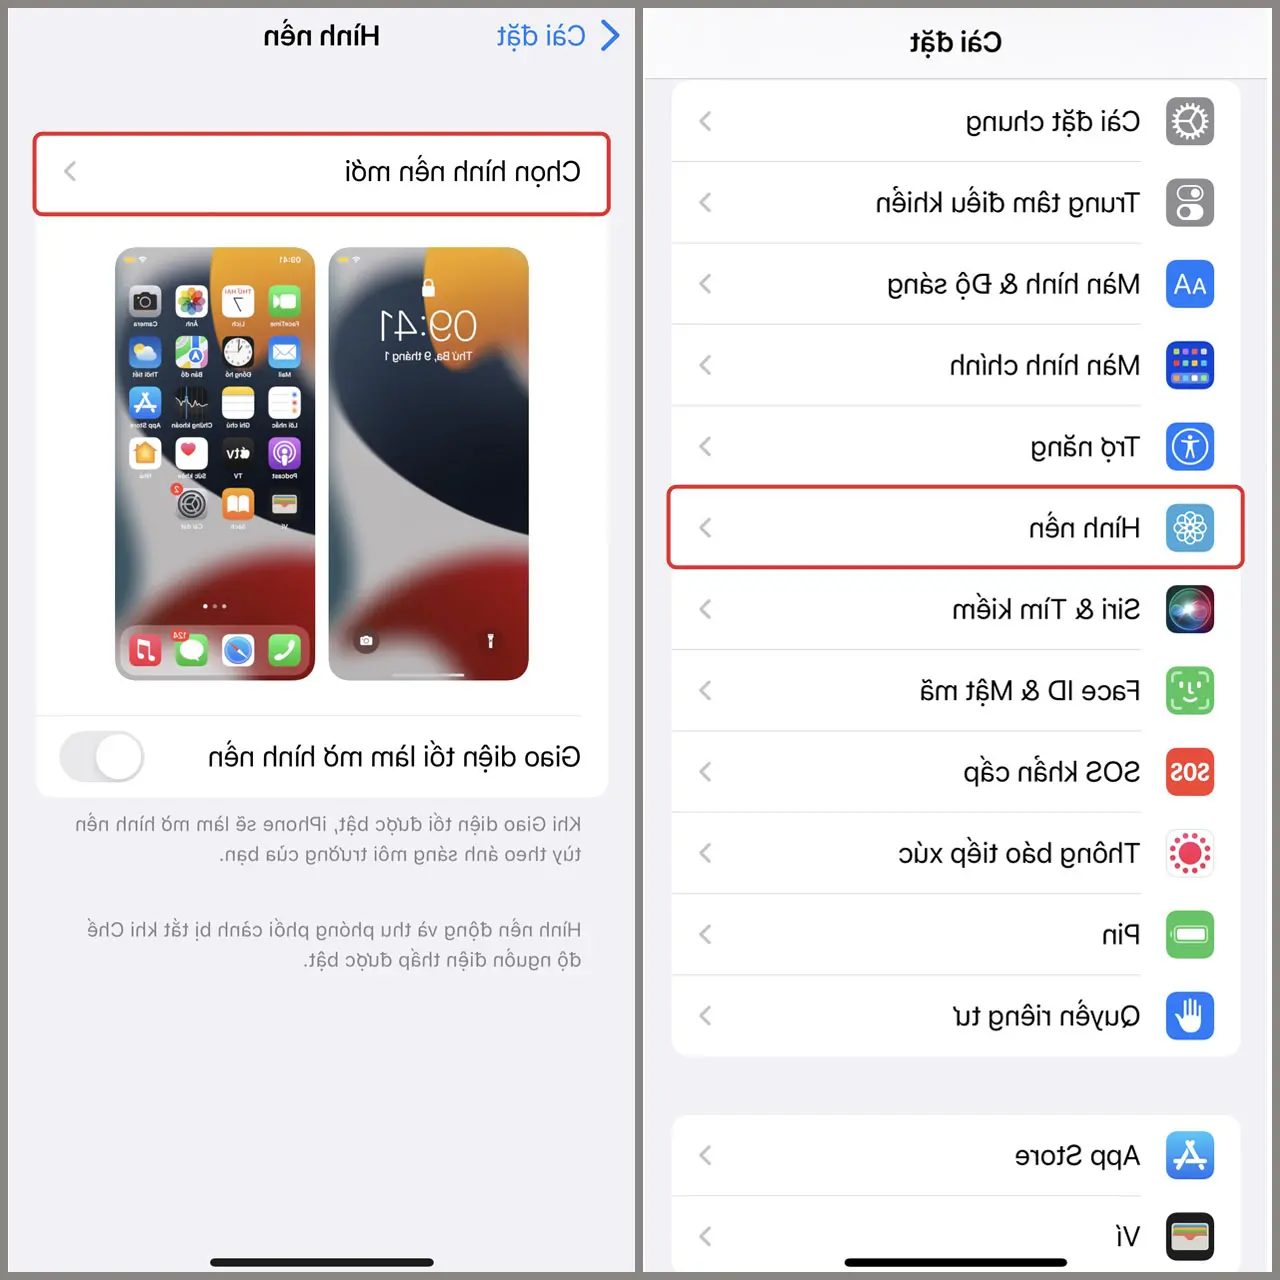 Wallpaper iOS 13 berkualitas tinggi untuk ponsel yang lebih canggih